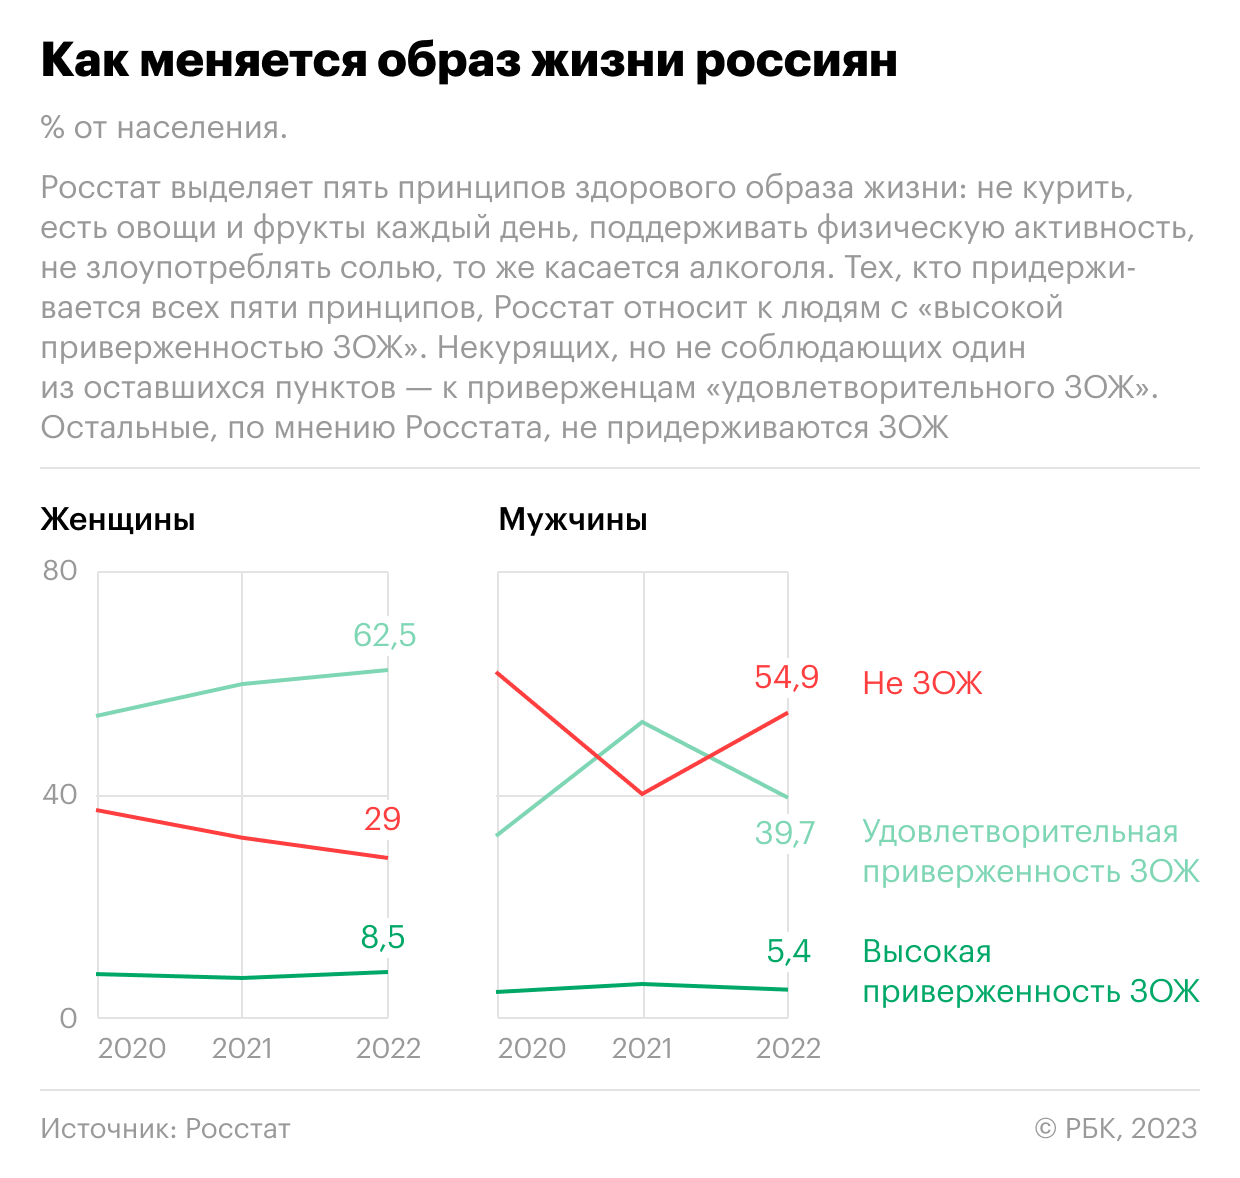 Как мужчины в России стали чаще заниматься «анти-ЗОЖ». Инфографика